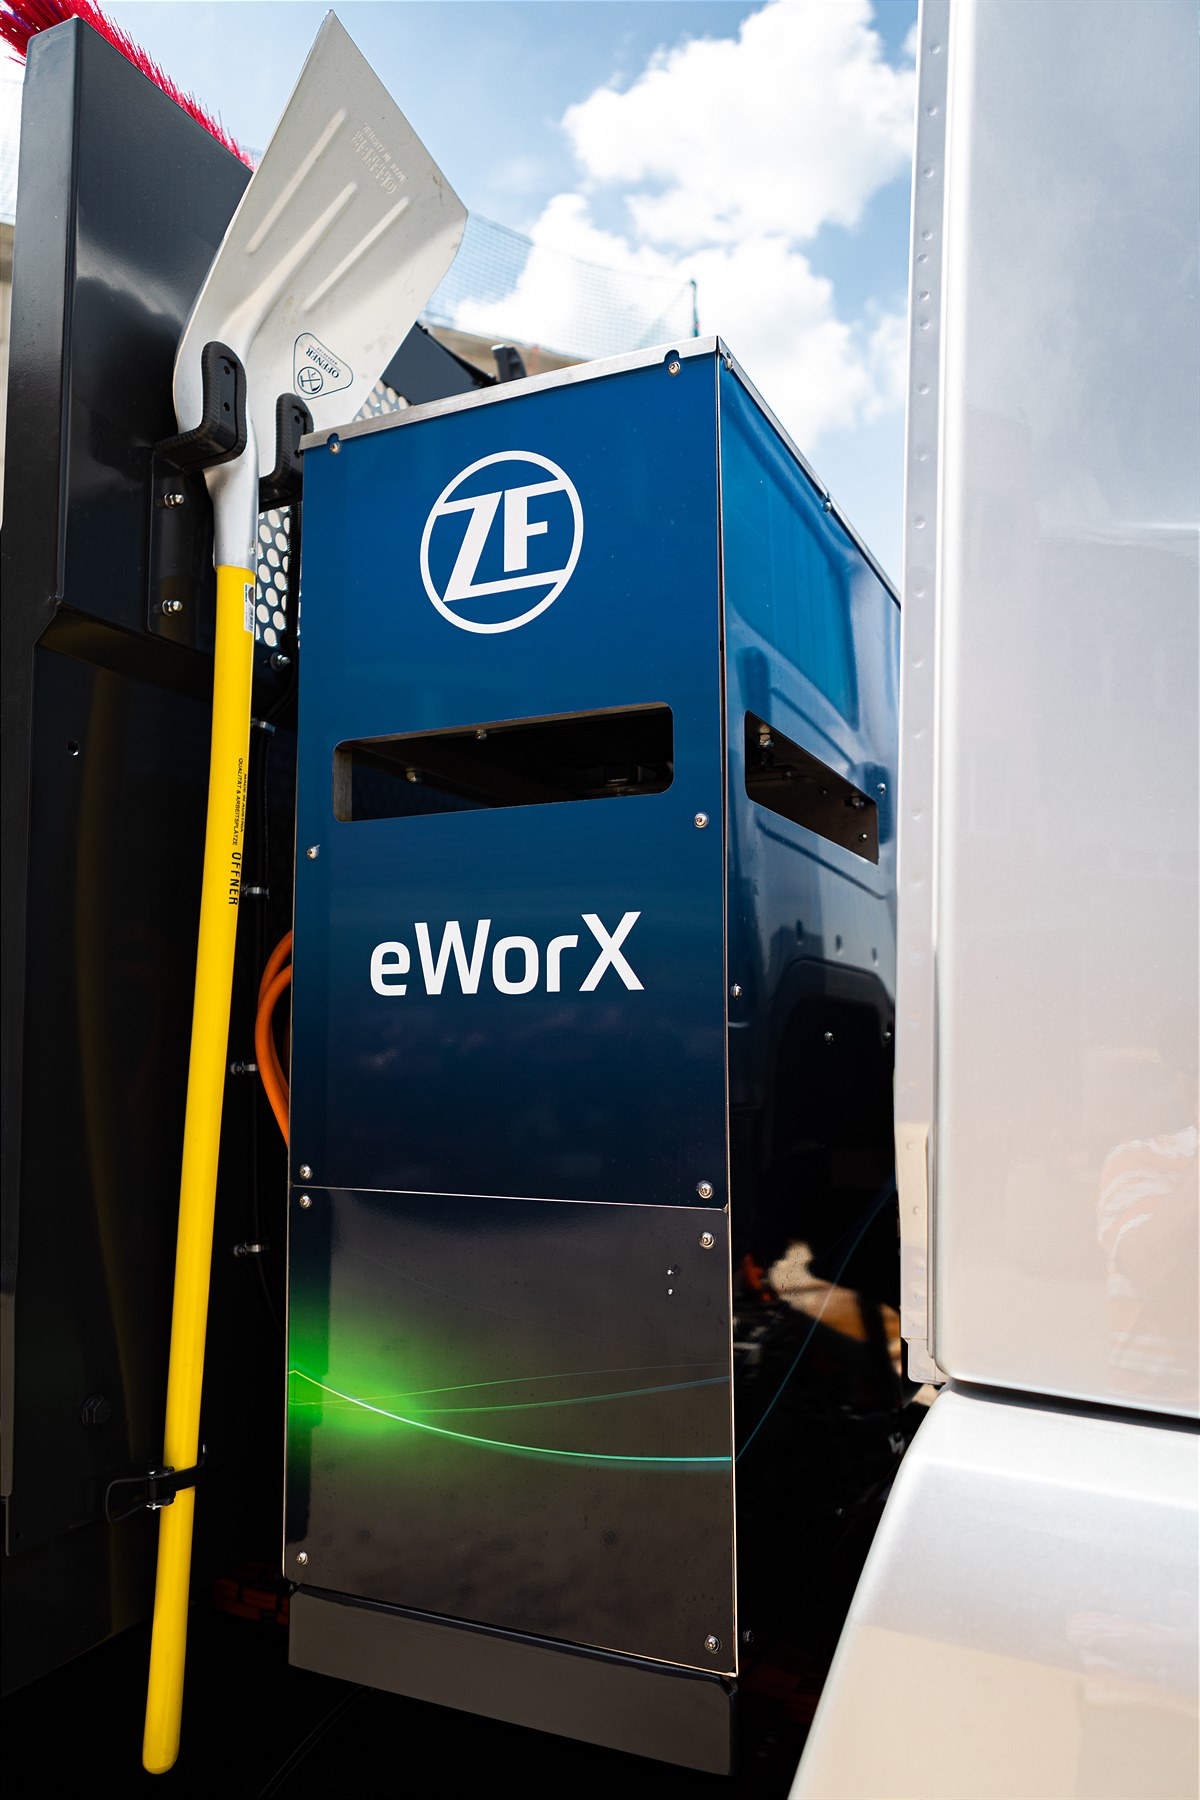 The eWorX module